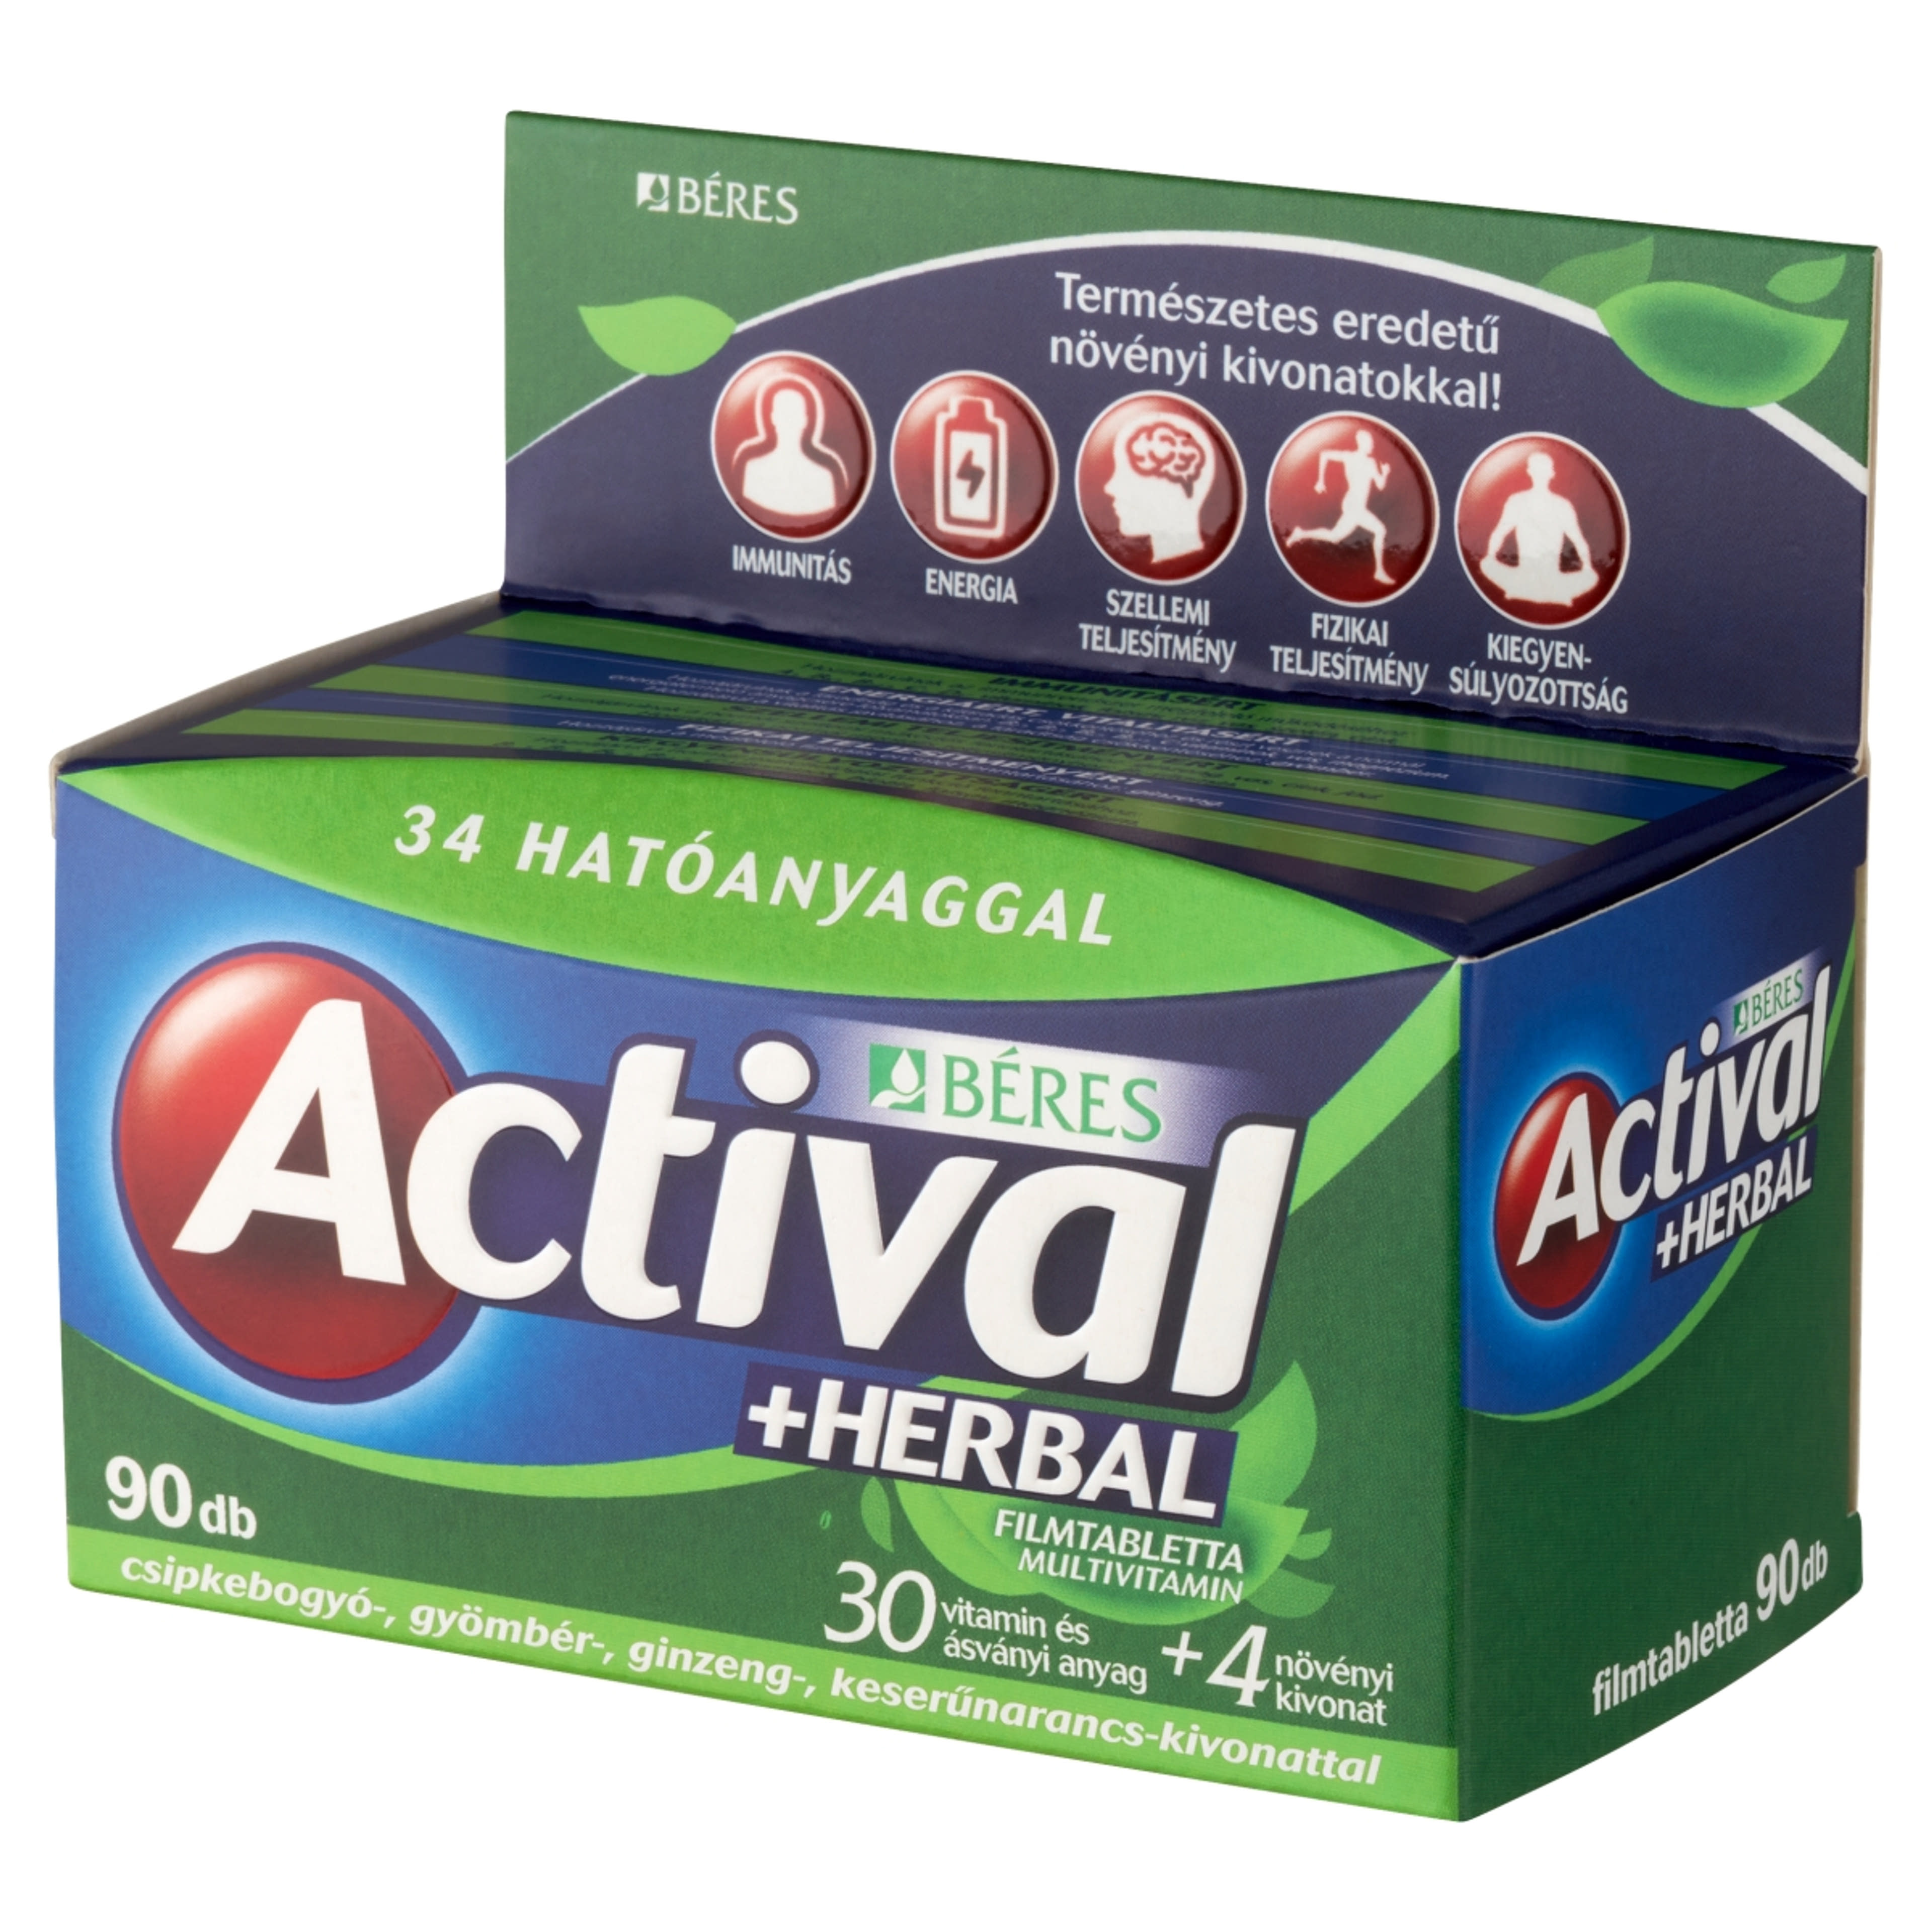 Actival Herbal multivitamin filmtabletta - 90 db-3